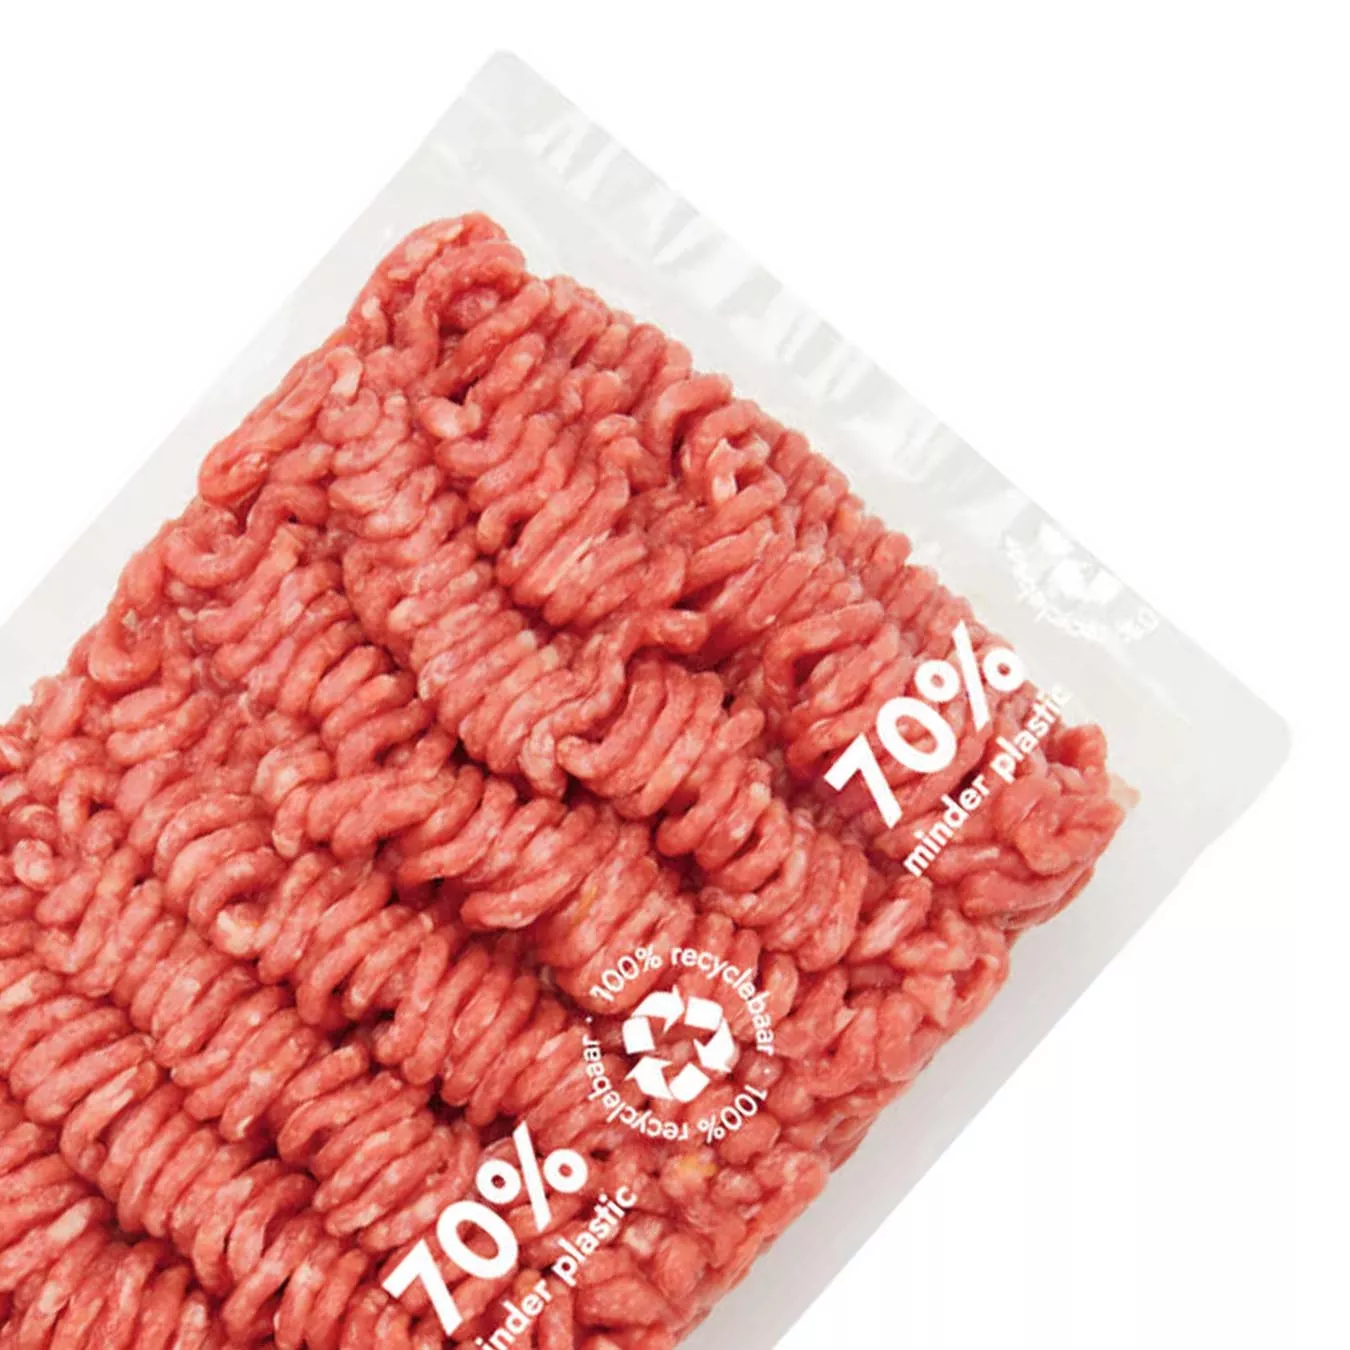 Tendance : l'emballage flowpack de la viande comme alternative durable aux barquettes 